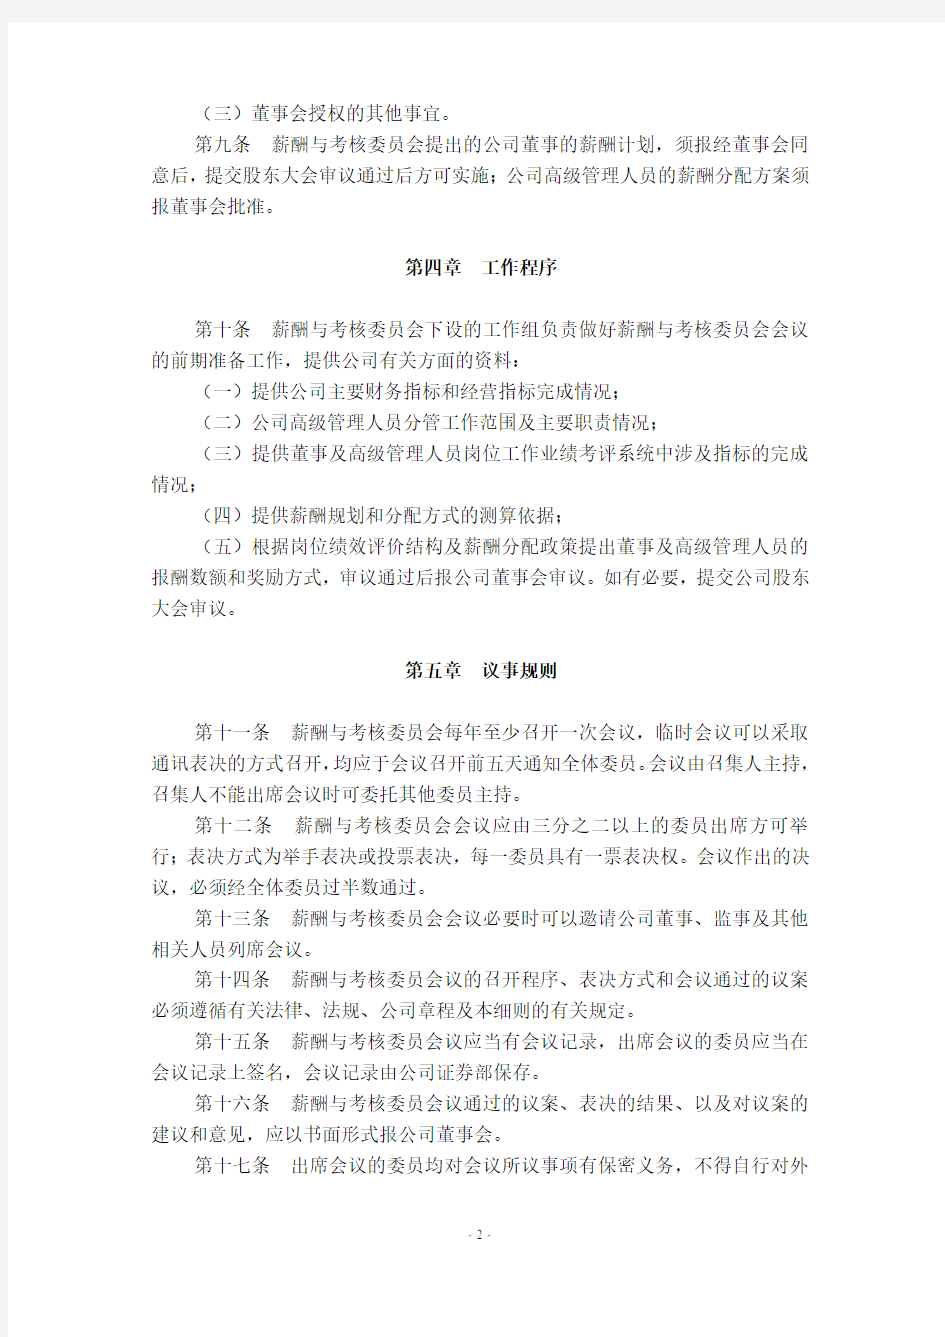 江苏弘业股份有限公司董事会薪酬与考核委员会工作细则